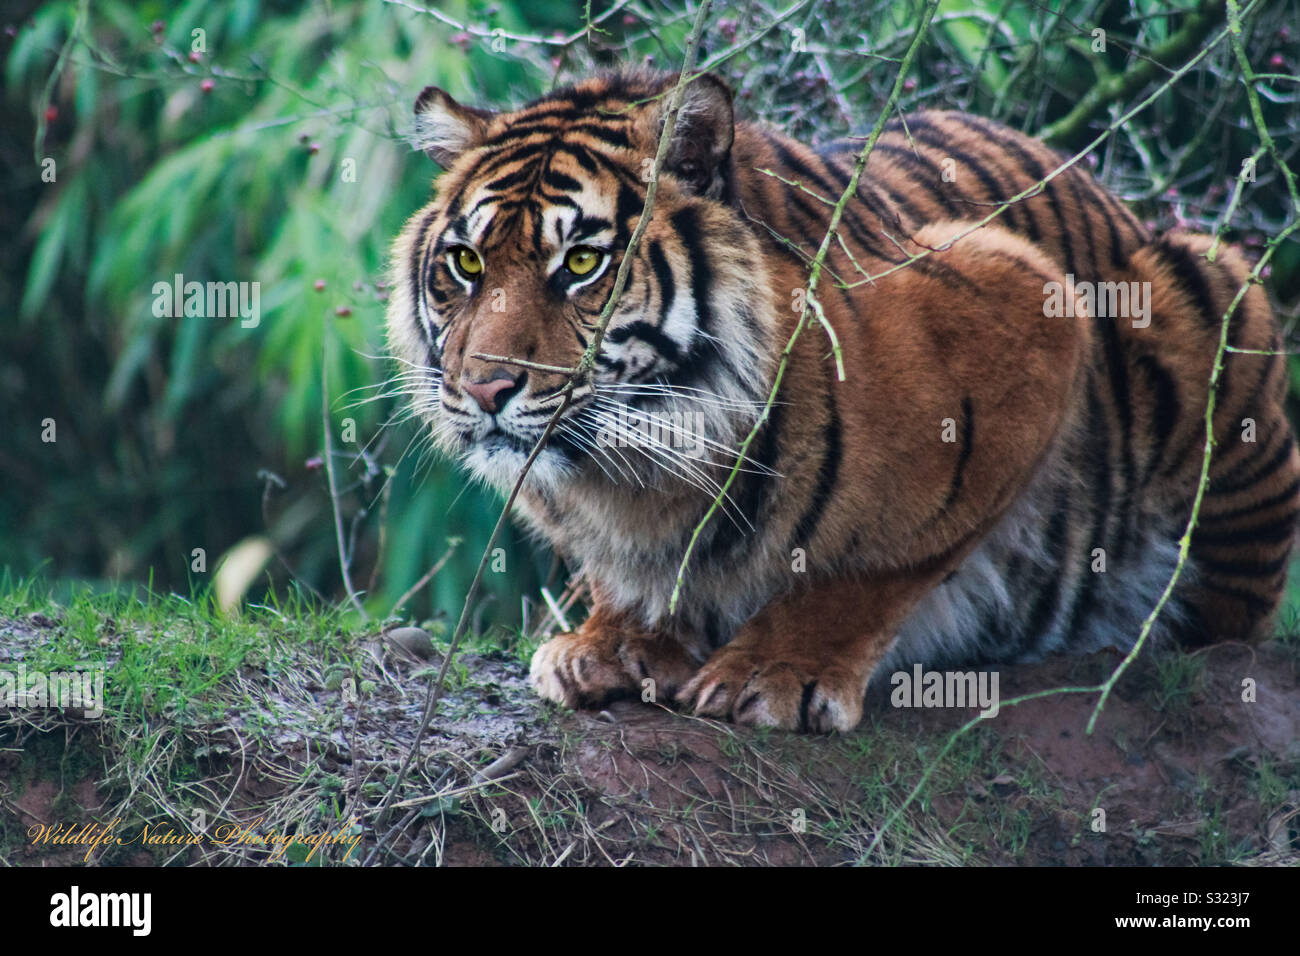 Tiger at south lakes zoo Stock Photo